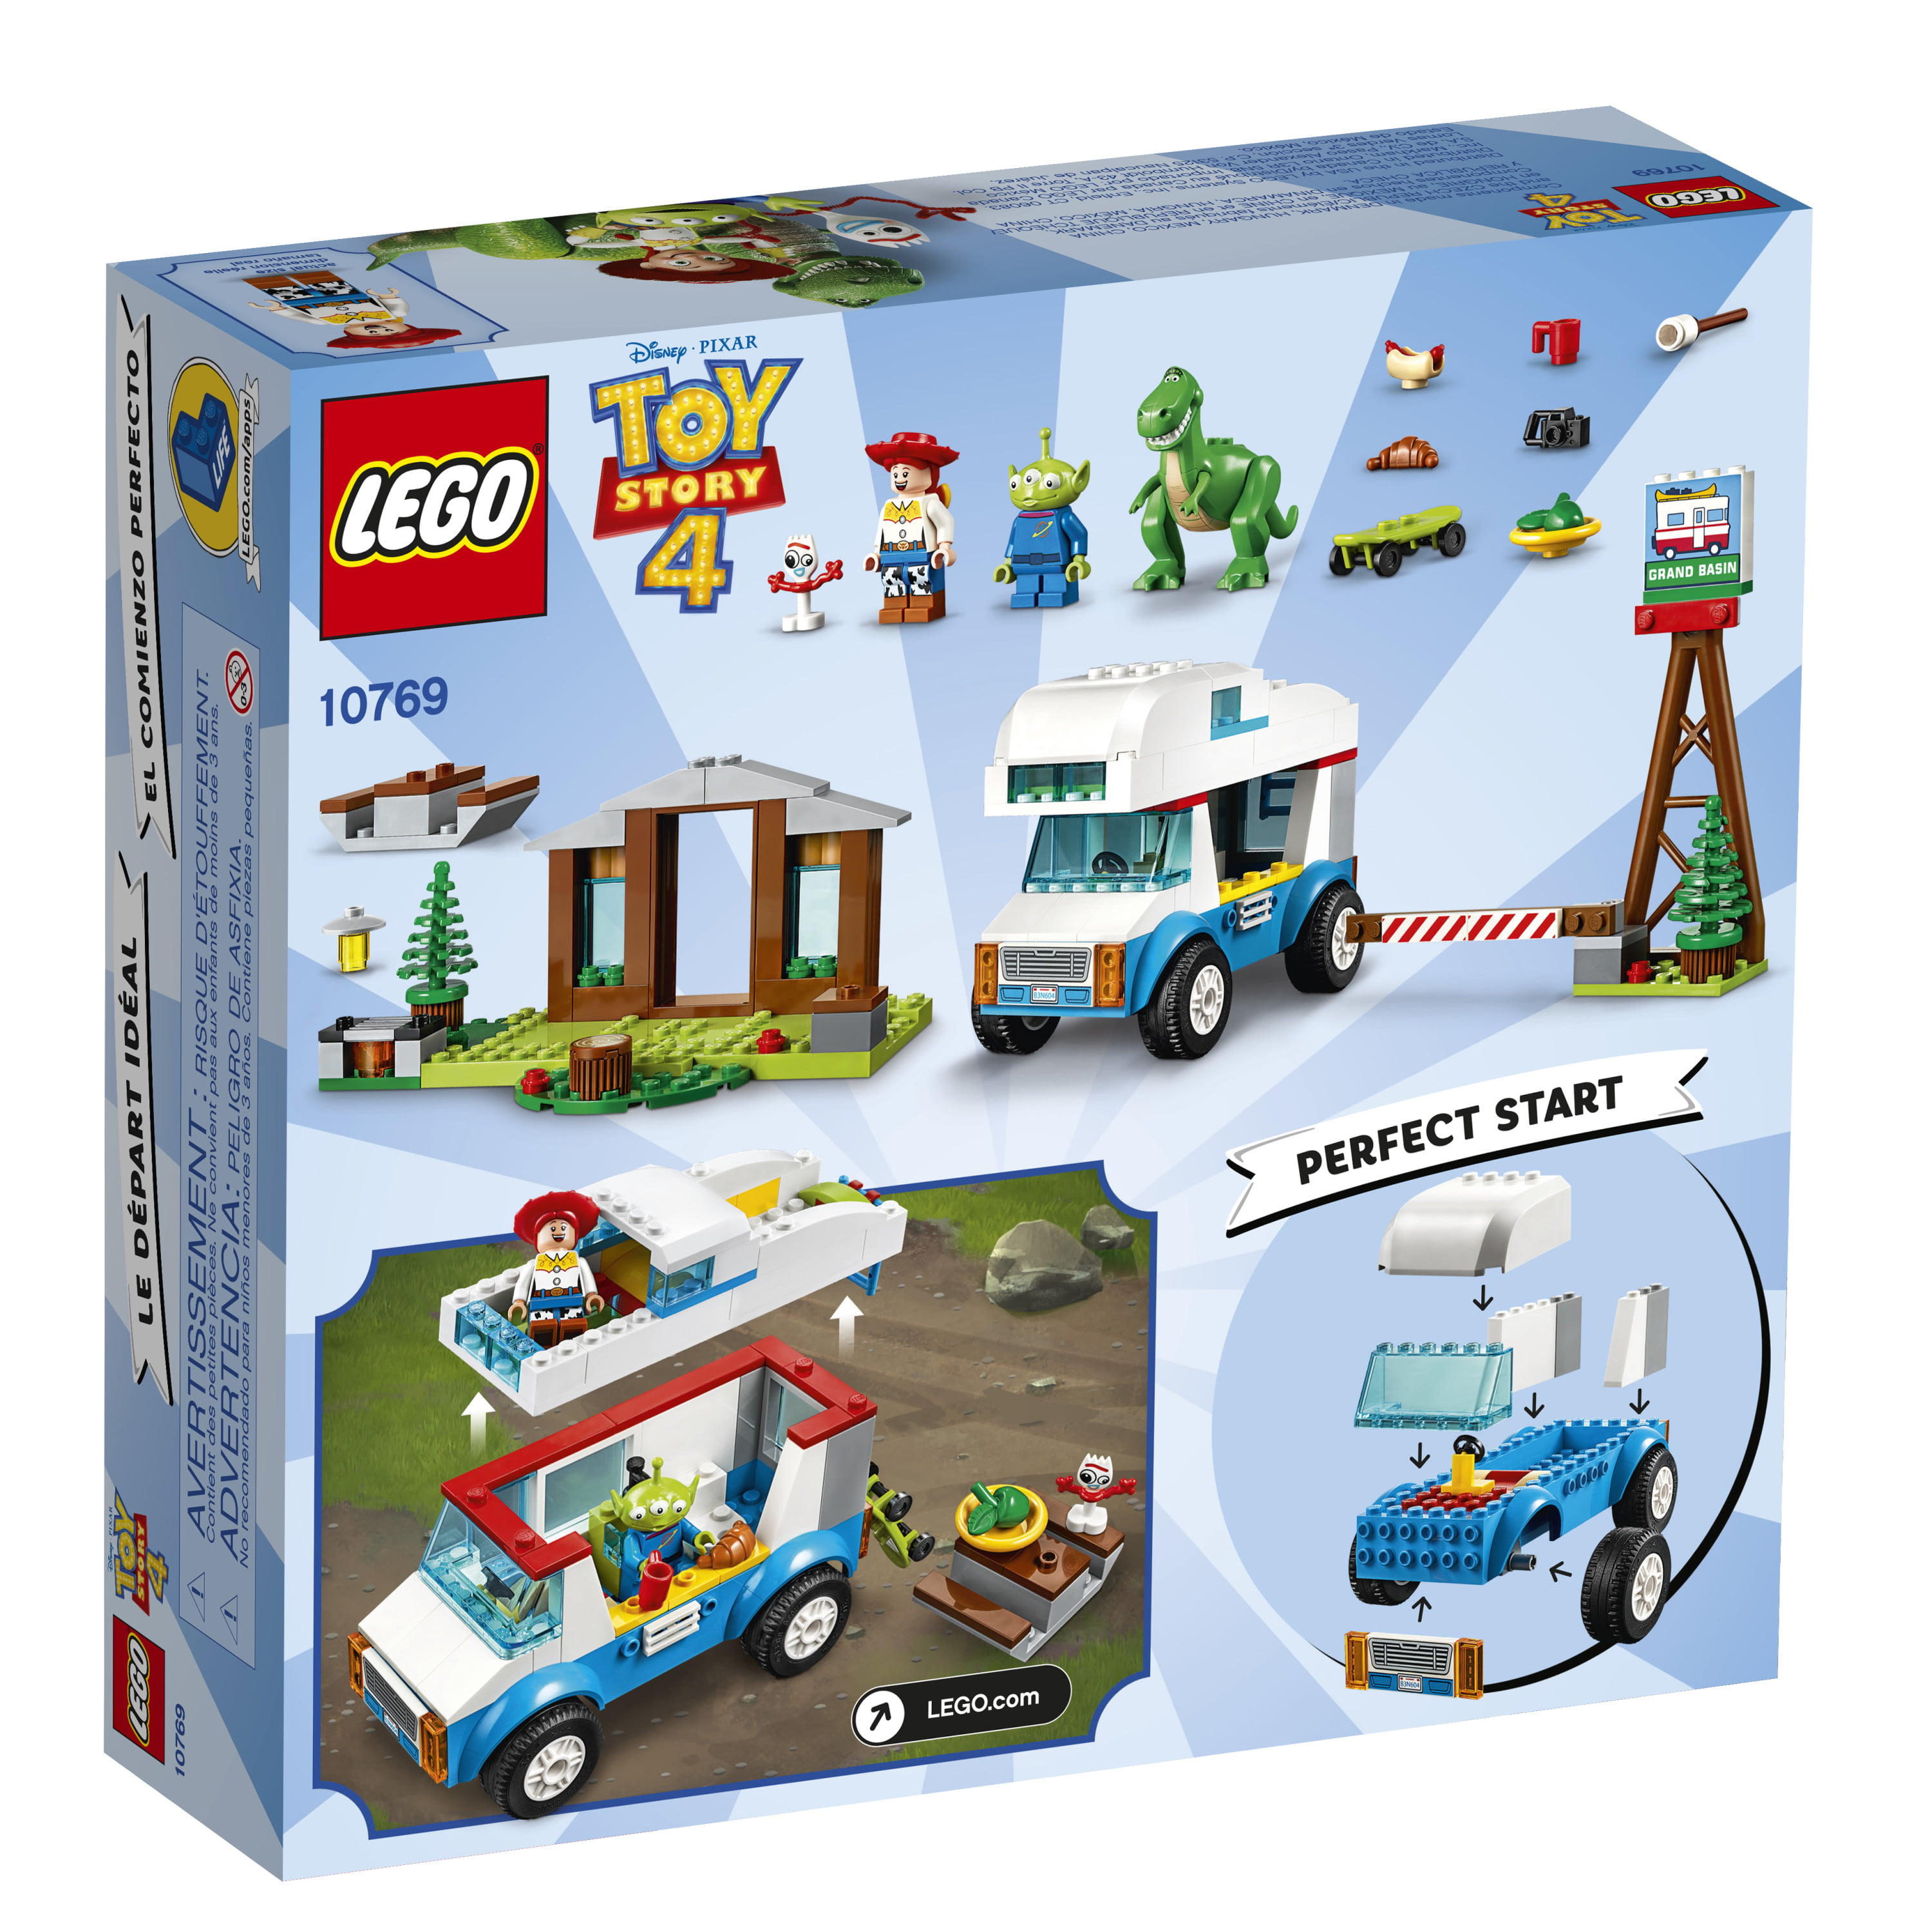 Genuine LEGO DISNEY Toy Story 4 Jessie minifigura toy023 Set da 10769 